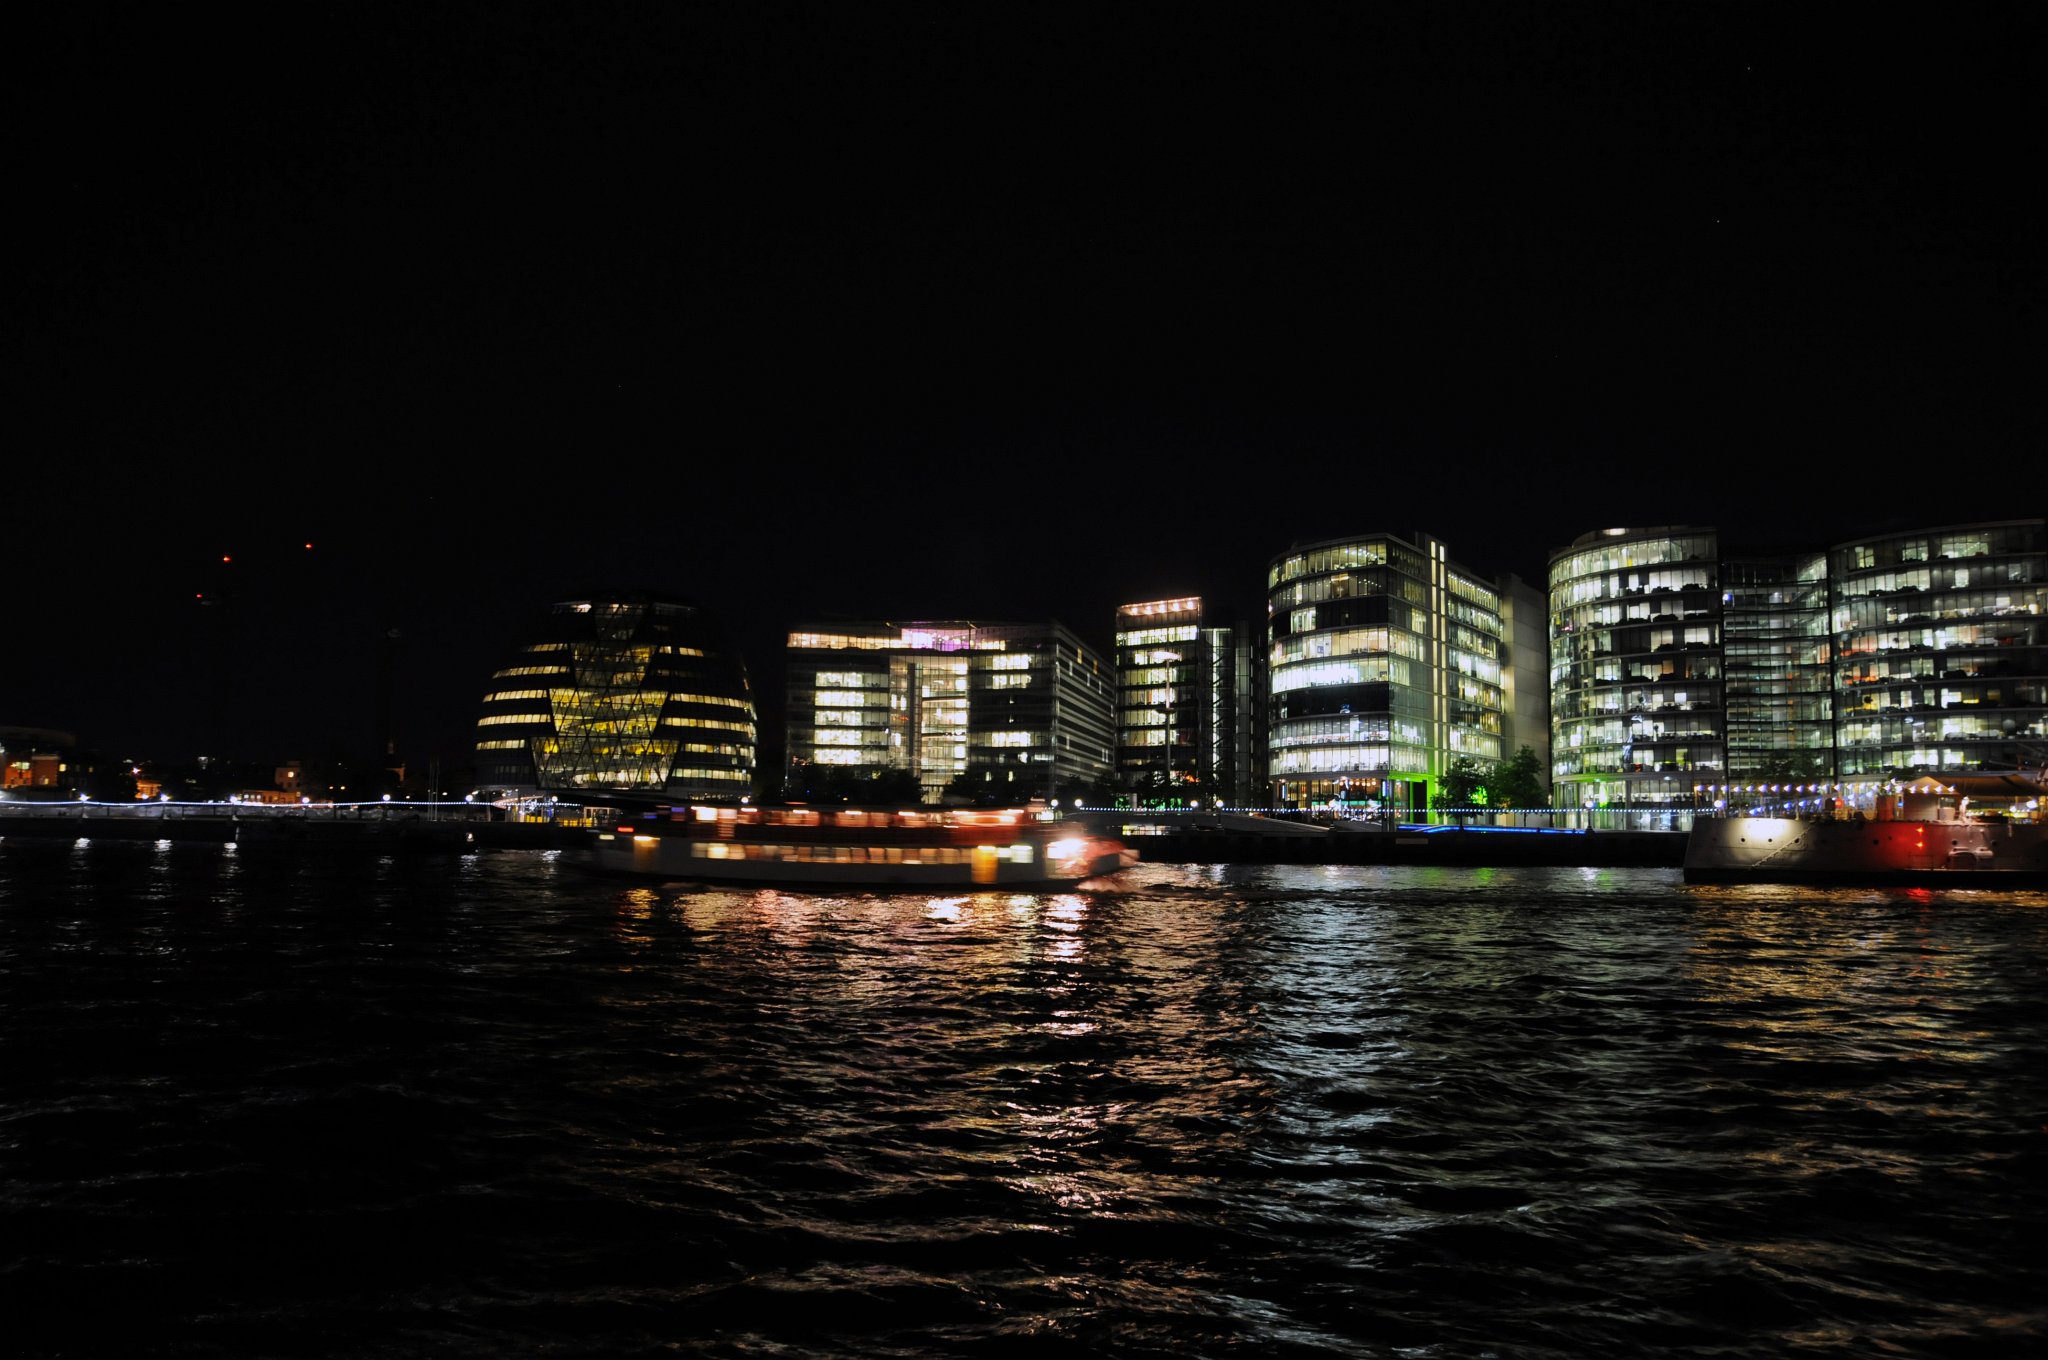 DSC_3616_1.jpg - Pohled na nočně osvětlené moderní budovy na nábřeží Temže. Vlevo je jasně osvětlená City Hall, Hays Galleria a další.